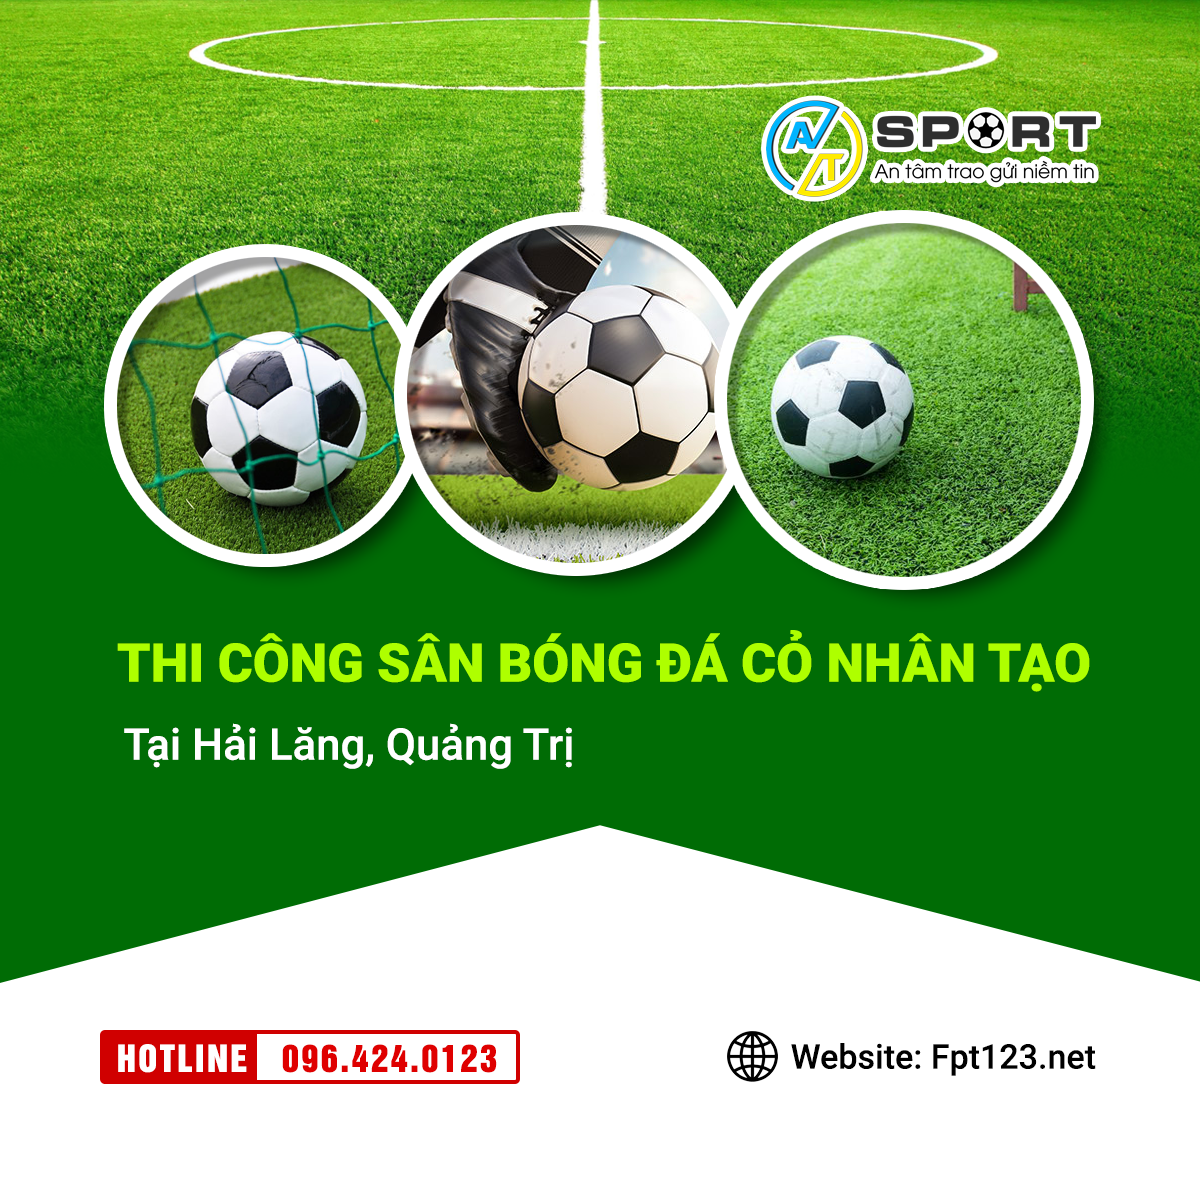 Thi công sân bóng đá cỏ nhân tạo ở Hải Lăng, Quảng Trị